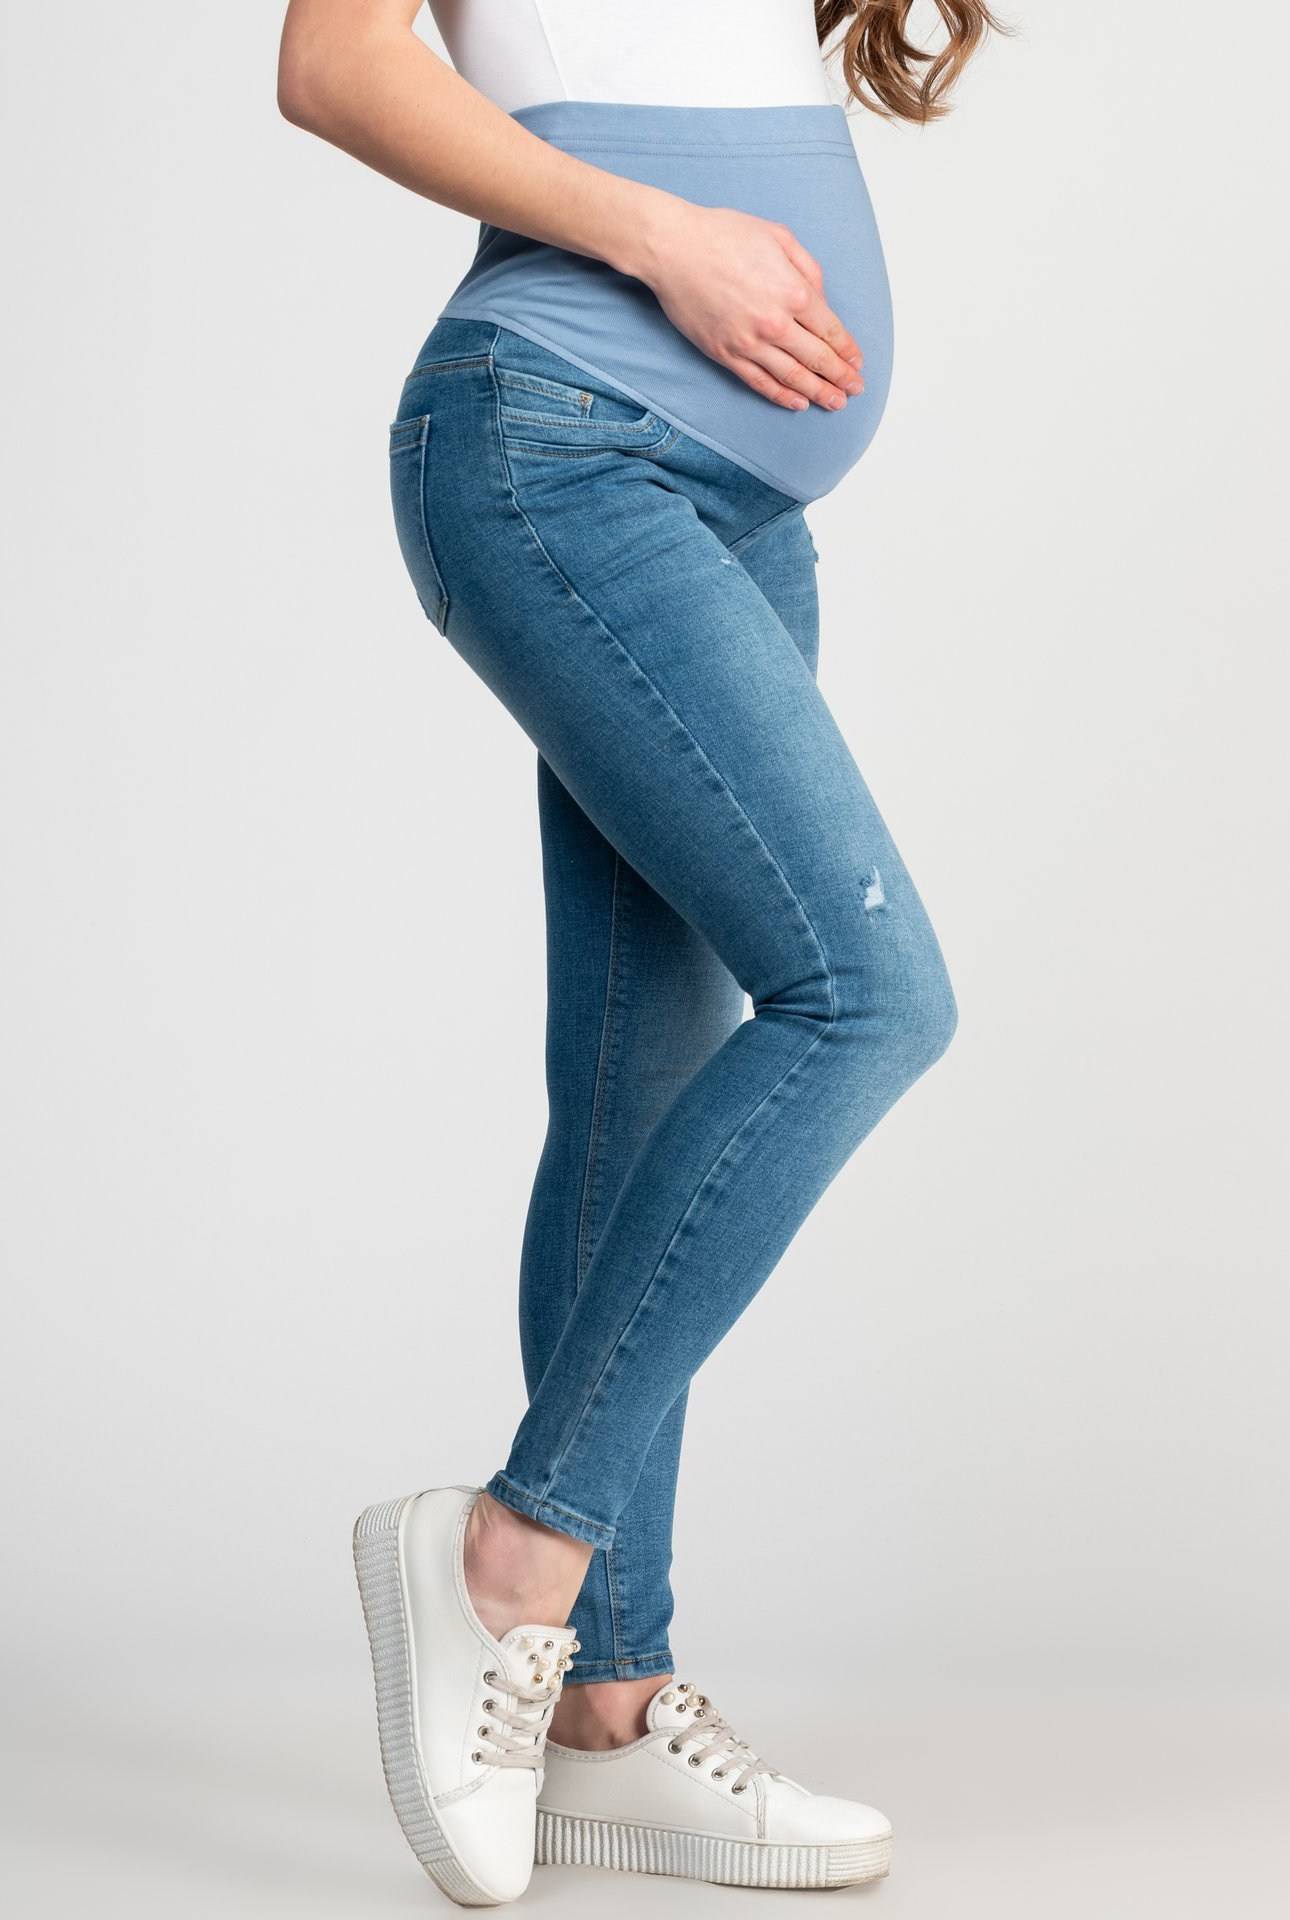 Топ 10 лучших джинсов для беременных